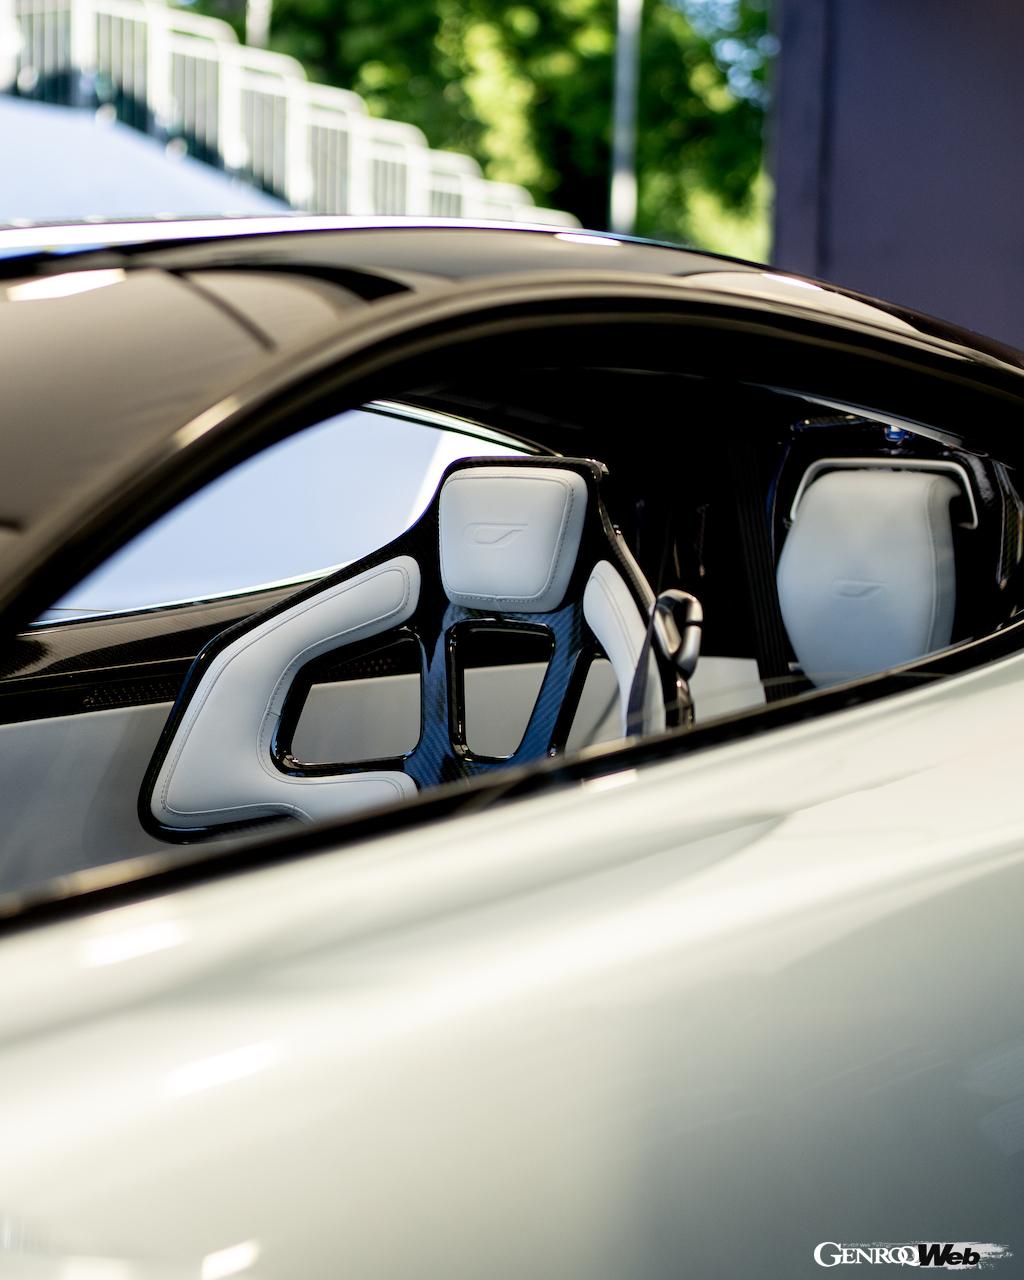 「グッドウッドのヒルクライムで最高出力1250PSのタンデム型ハイパーカー「ジンガー 21C」が市販車最速タイムをマーク【動画】」の12枚めの画像